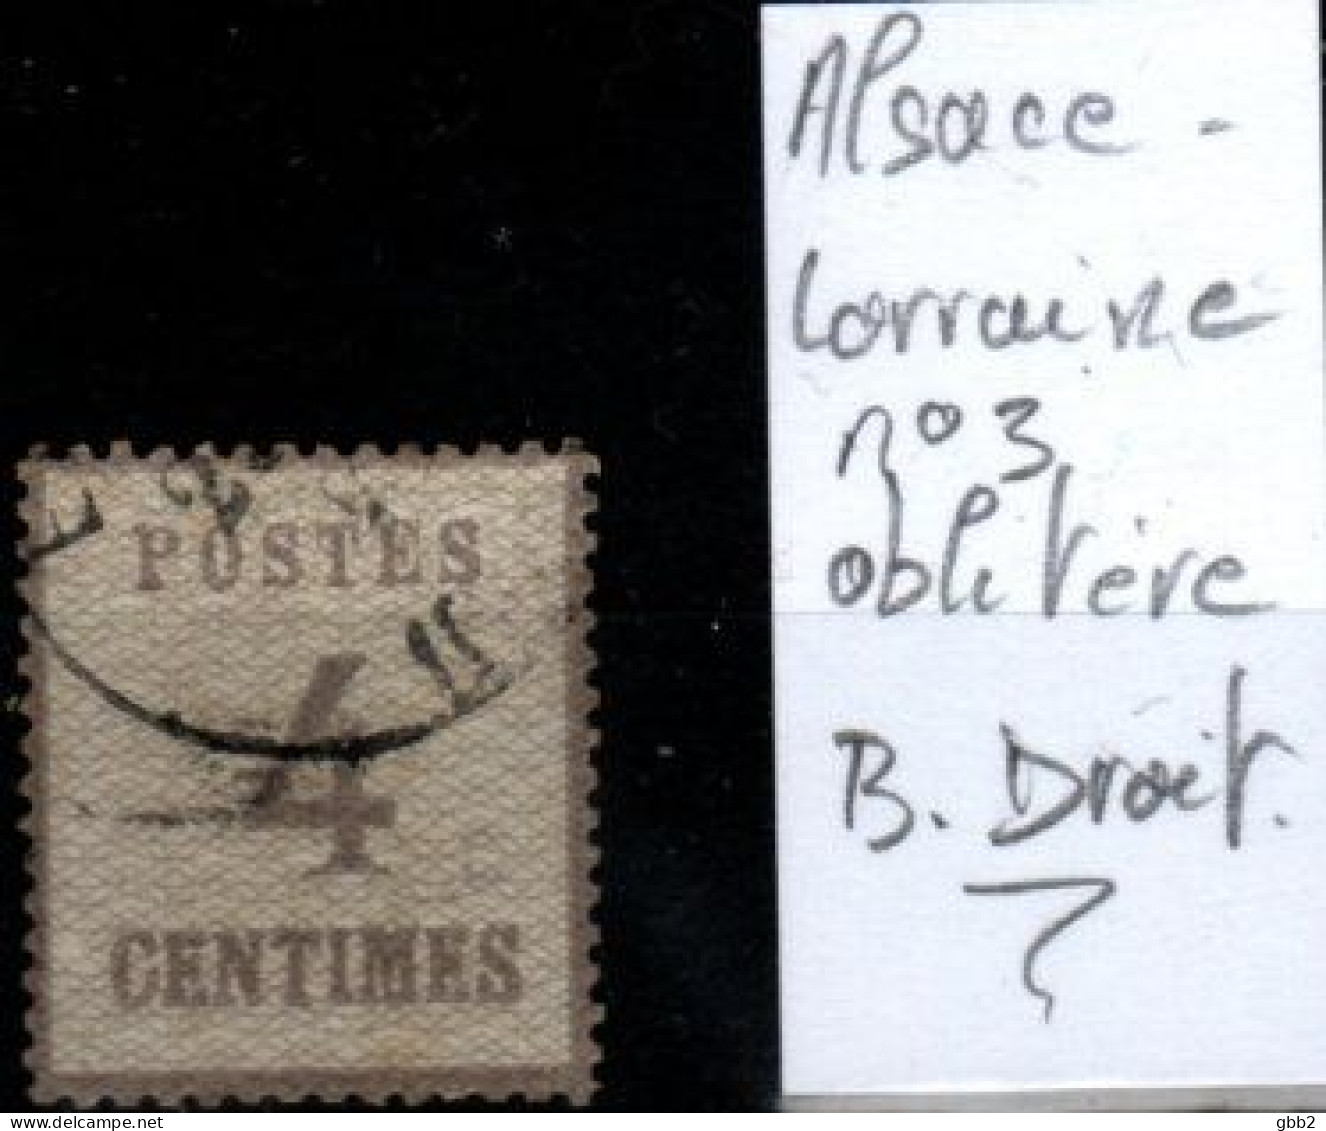 FRANCE - ALSACE-LORRAINE YT N° 3 Oblitéré, Avec Burelage Droit. Bas Prix, à Saisir. - Unused Stamps